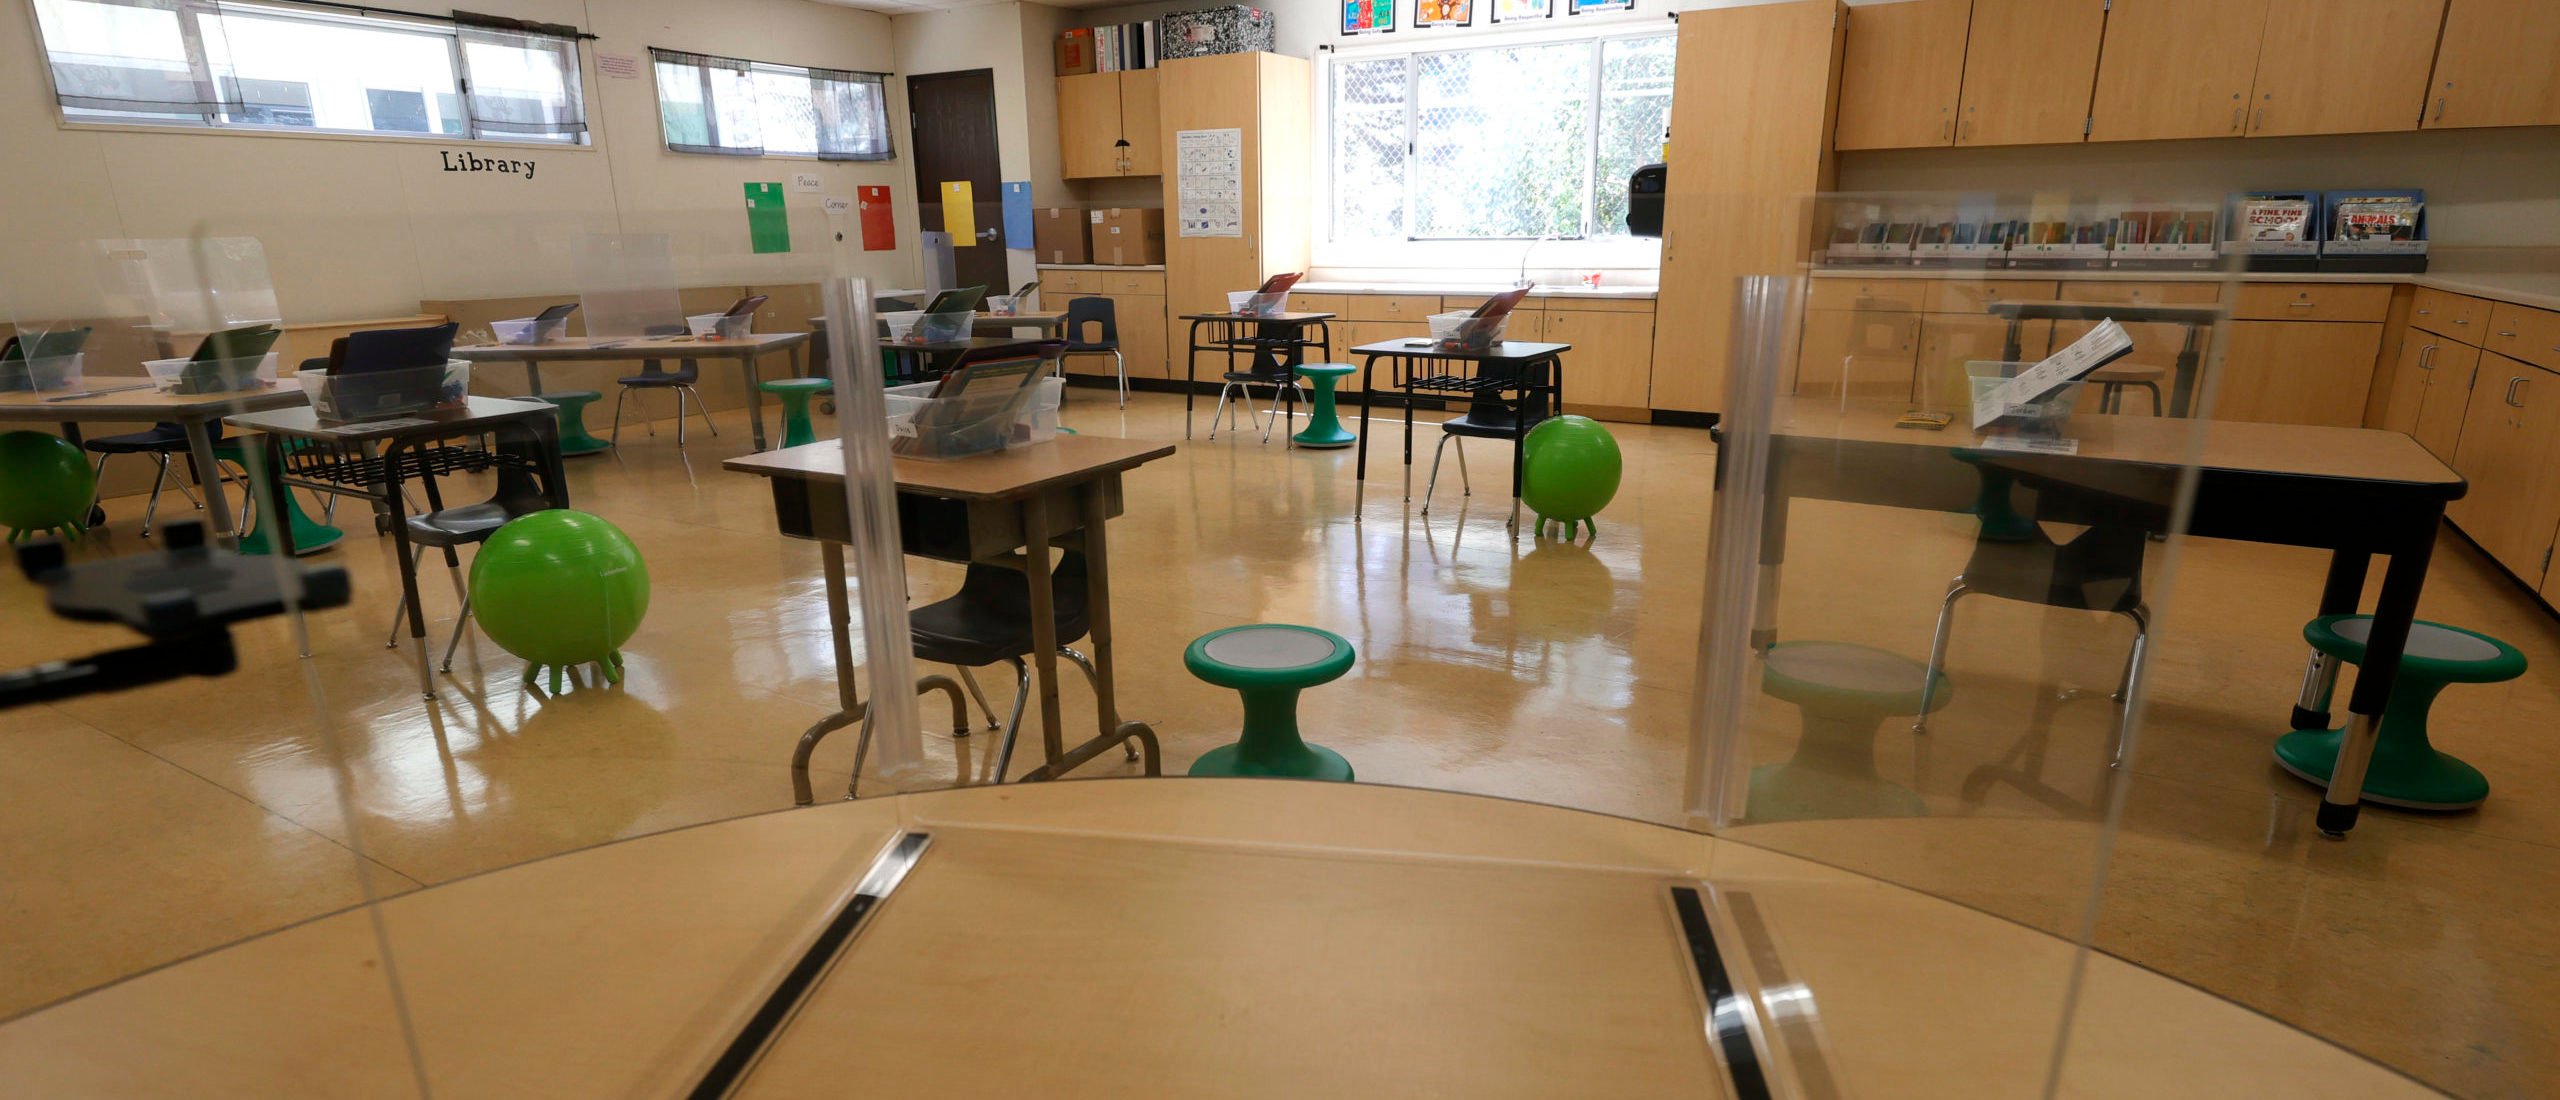 Student Grades Get Even Worse After California School Drops $250,000 On ‘Woke Kindergarten’ Program